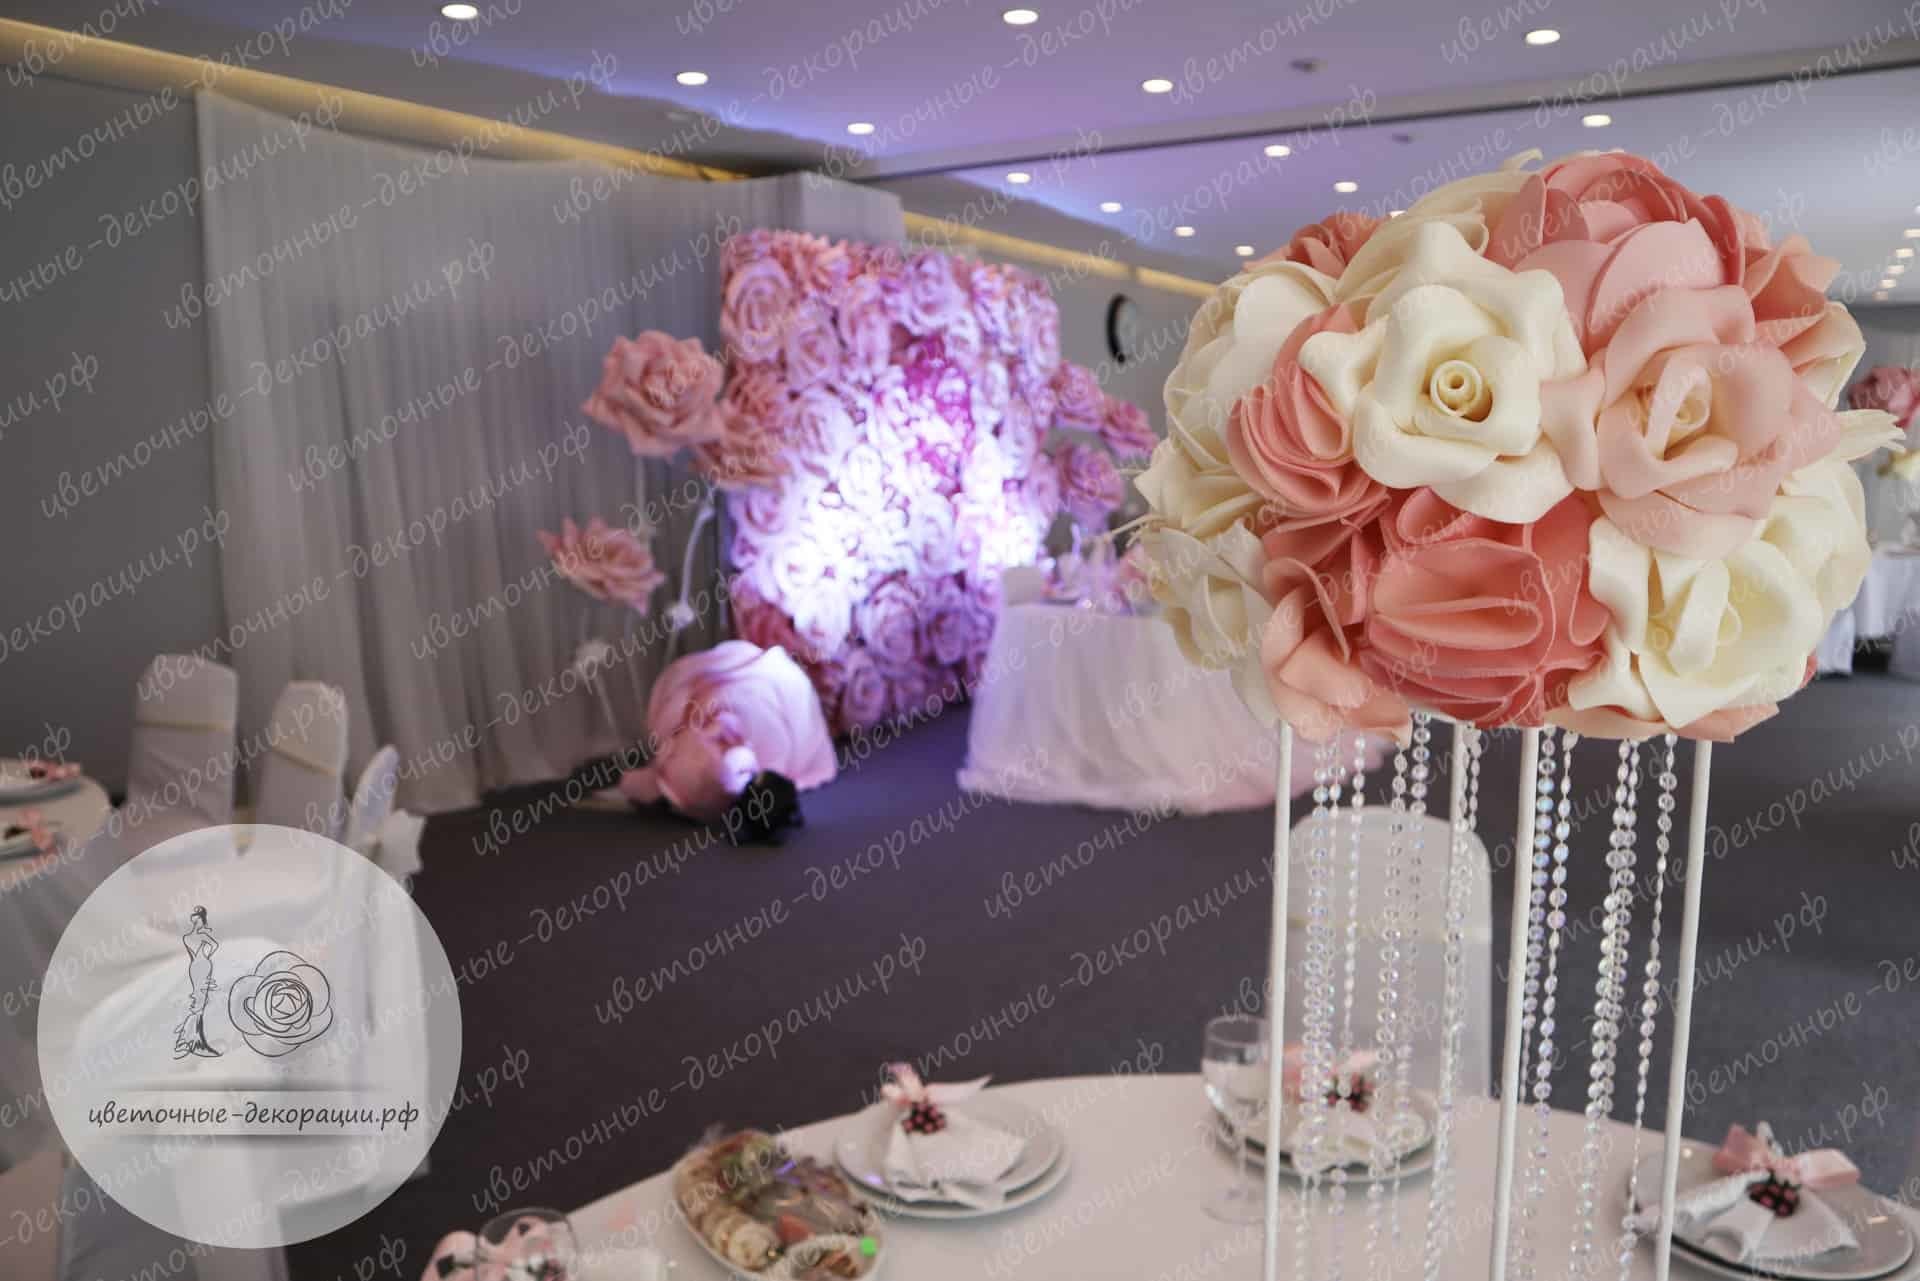 Оформление свадебного зала в розовом цвете